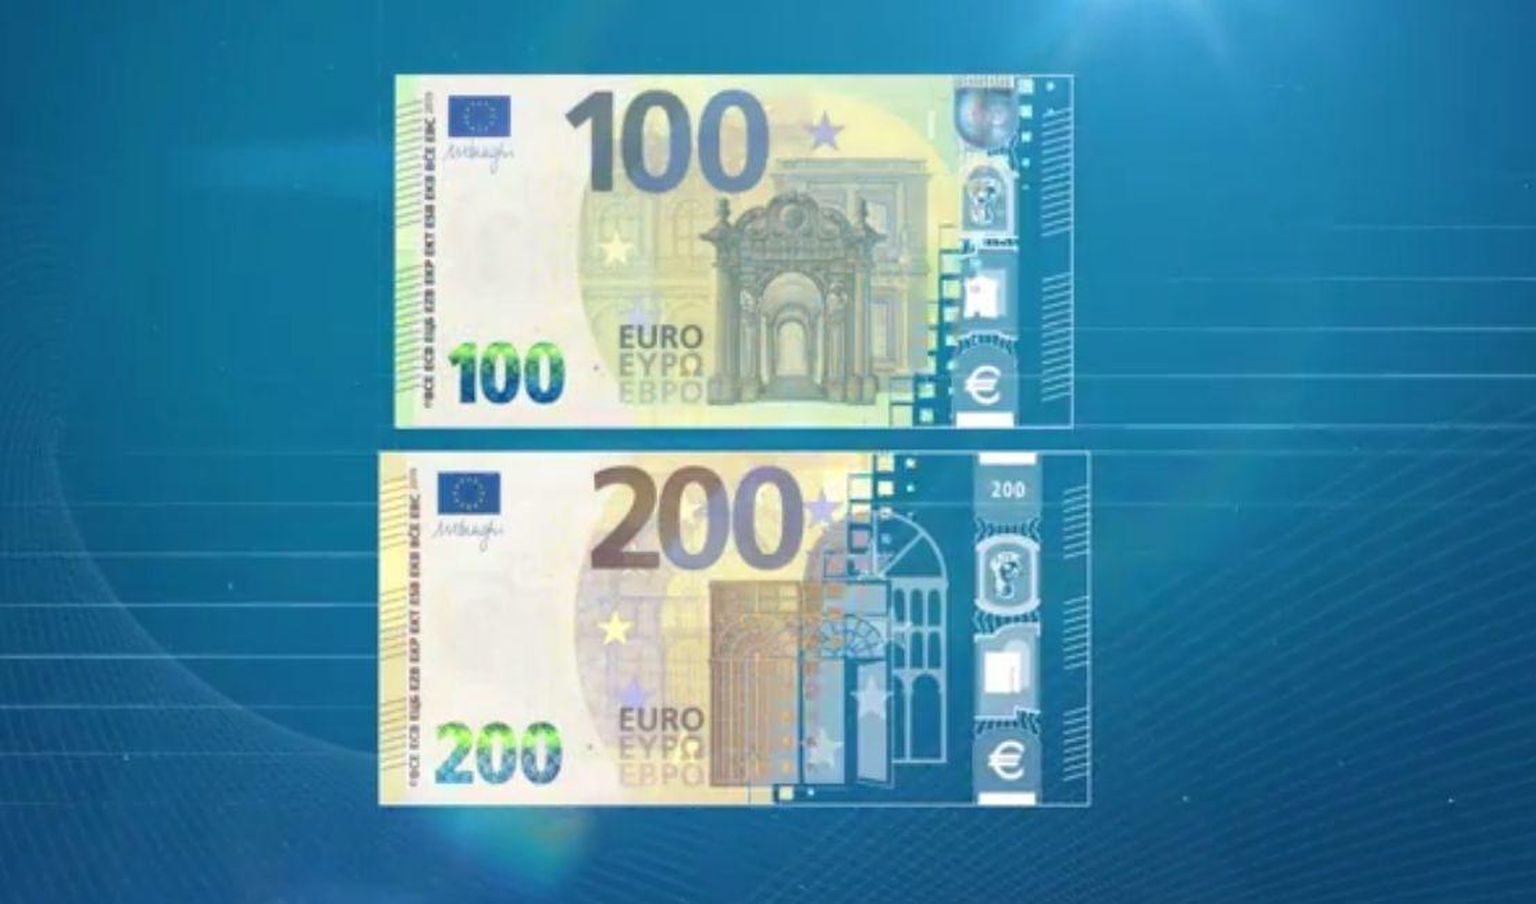 Euroopa Keskpank (EKP) teatas neljapäeval, et lisab stiimulipaketile 500 miljardit eurot ning pikendab meetmeid 2022. aasta kevadeni. Täpsemalt lisab EKP 500 miljardit võlakirjade ostu programmi.